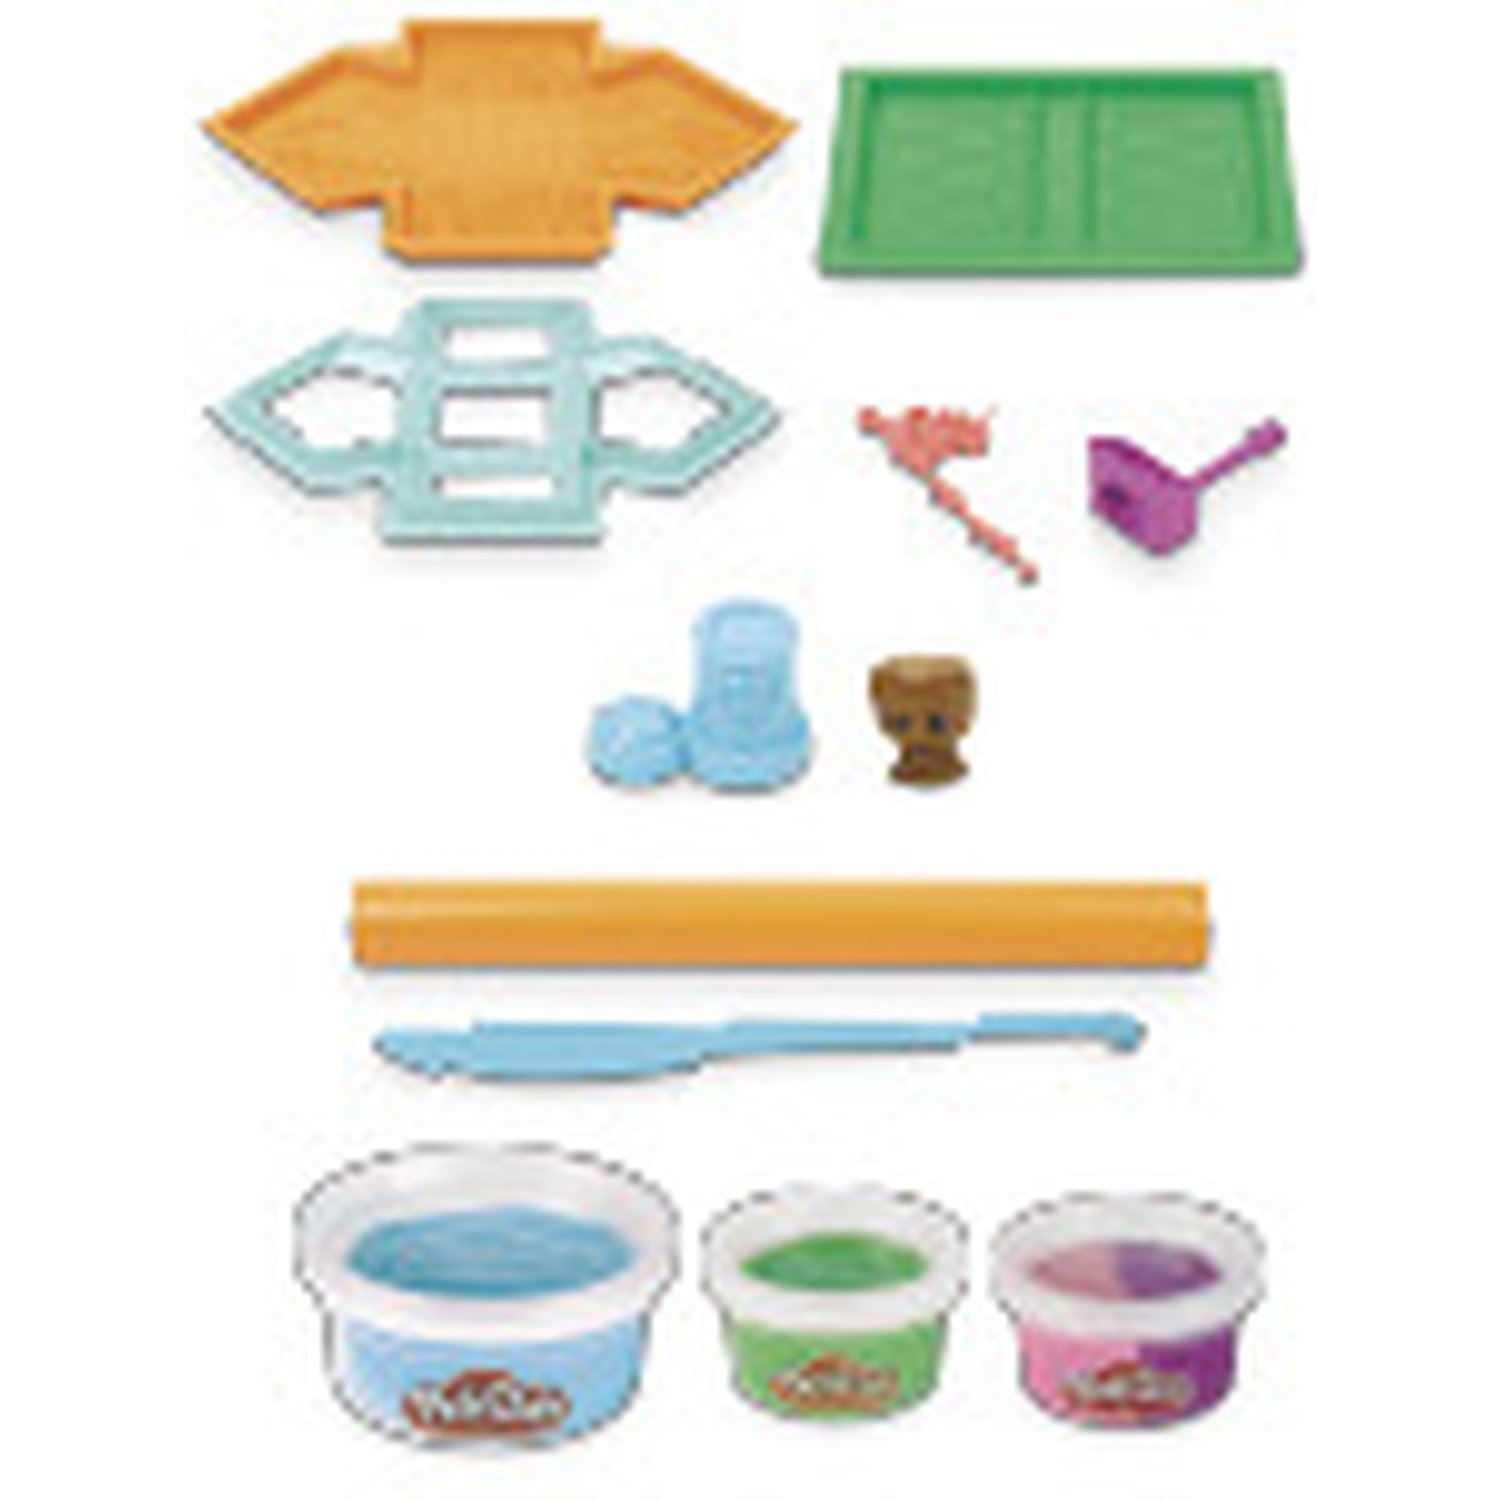 Набор игровой Play-Doh Домик для собаки E94775L0